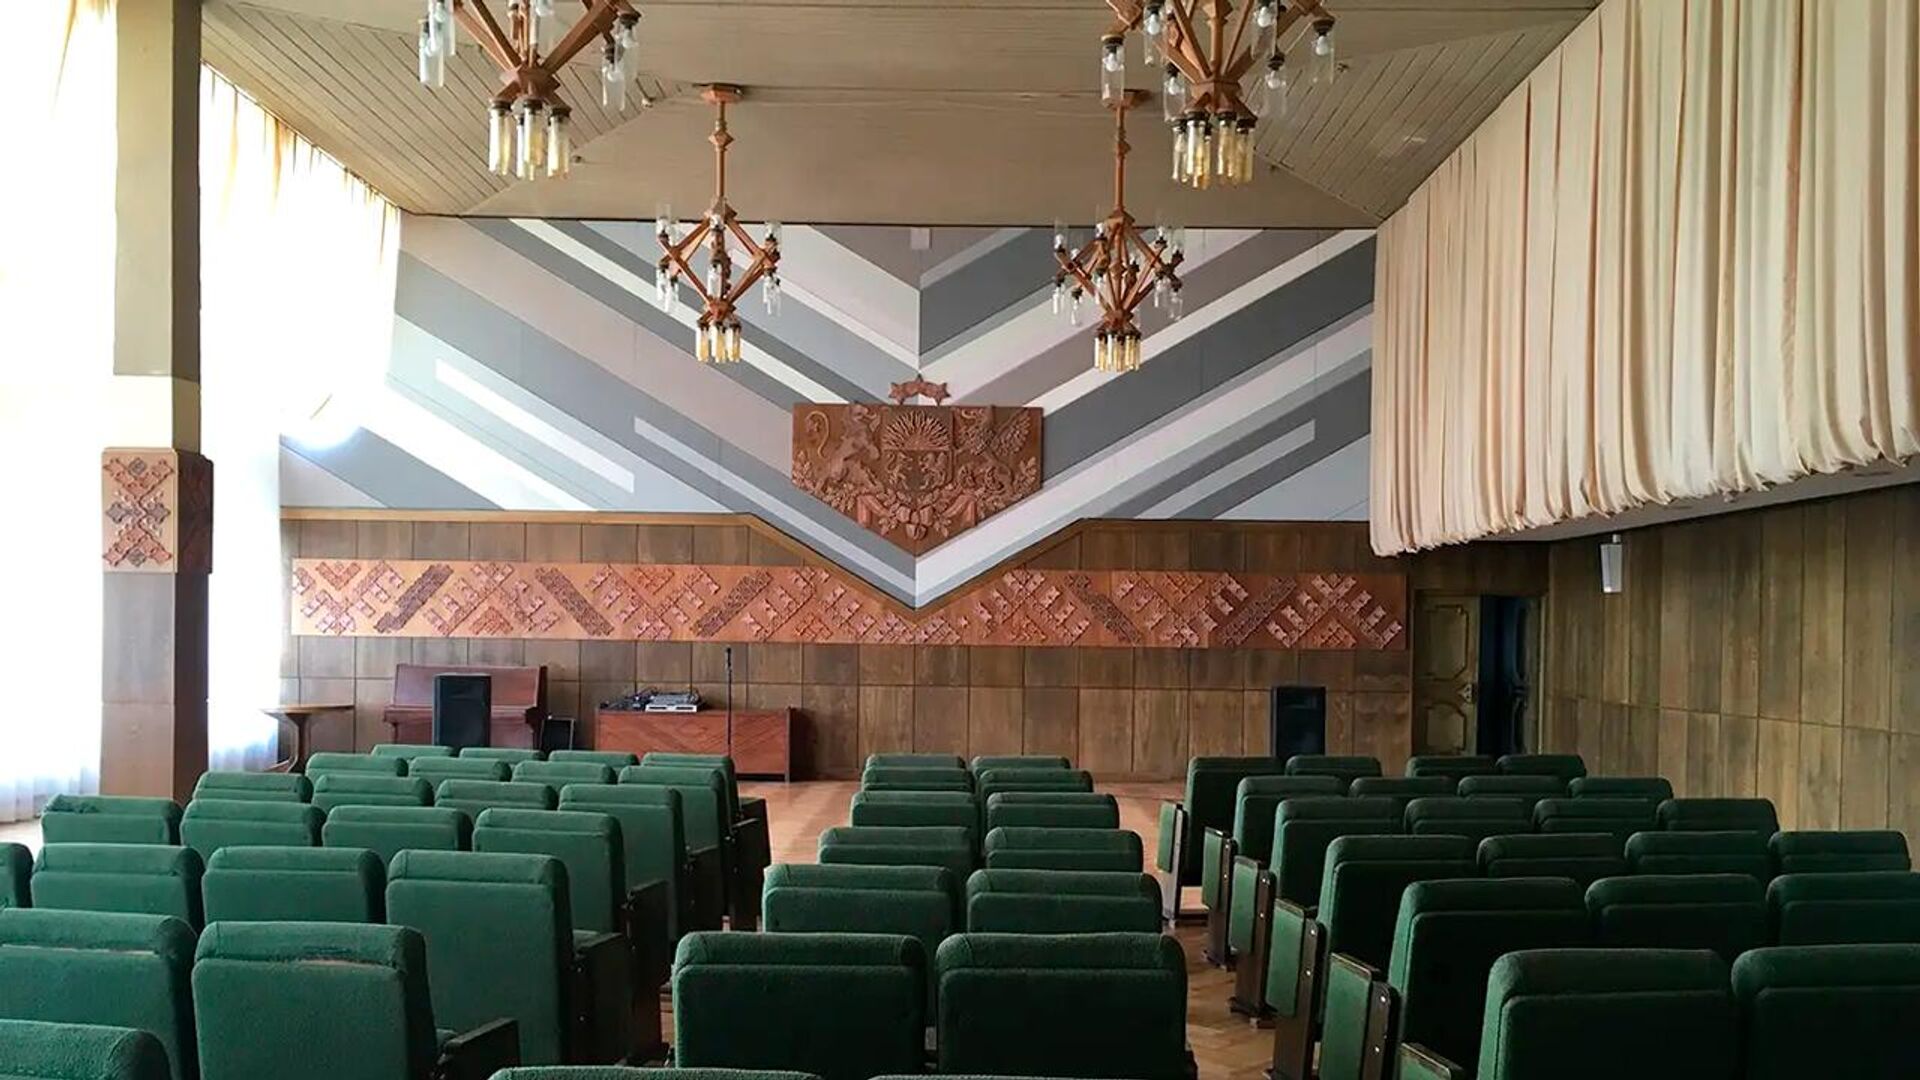 Свадебный зал в здании колхозного центра, Латвия, 2018 - Sputnik Латвия, 1920, 06.06.2022